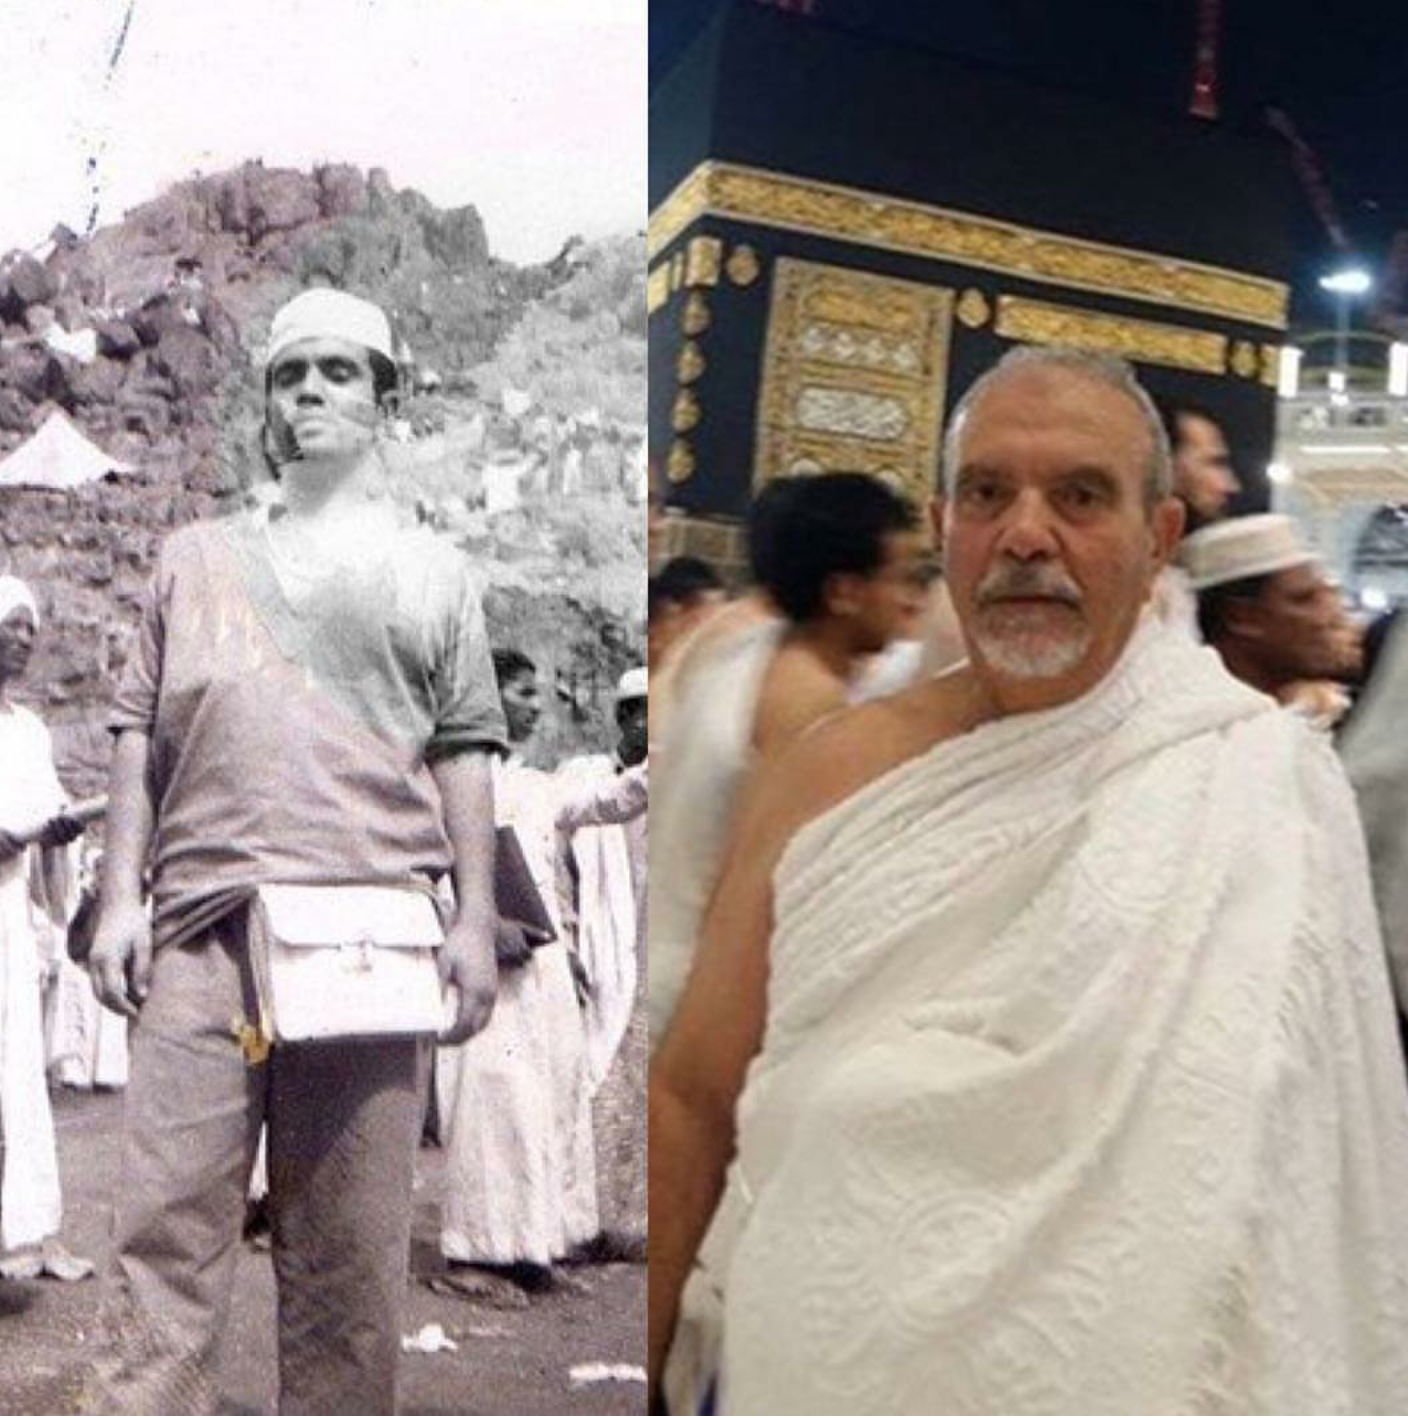 صورتان لحاج تونسي تفصل بينهما 43 عام تحكيان كيف كان الحج